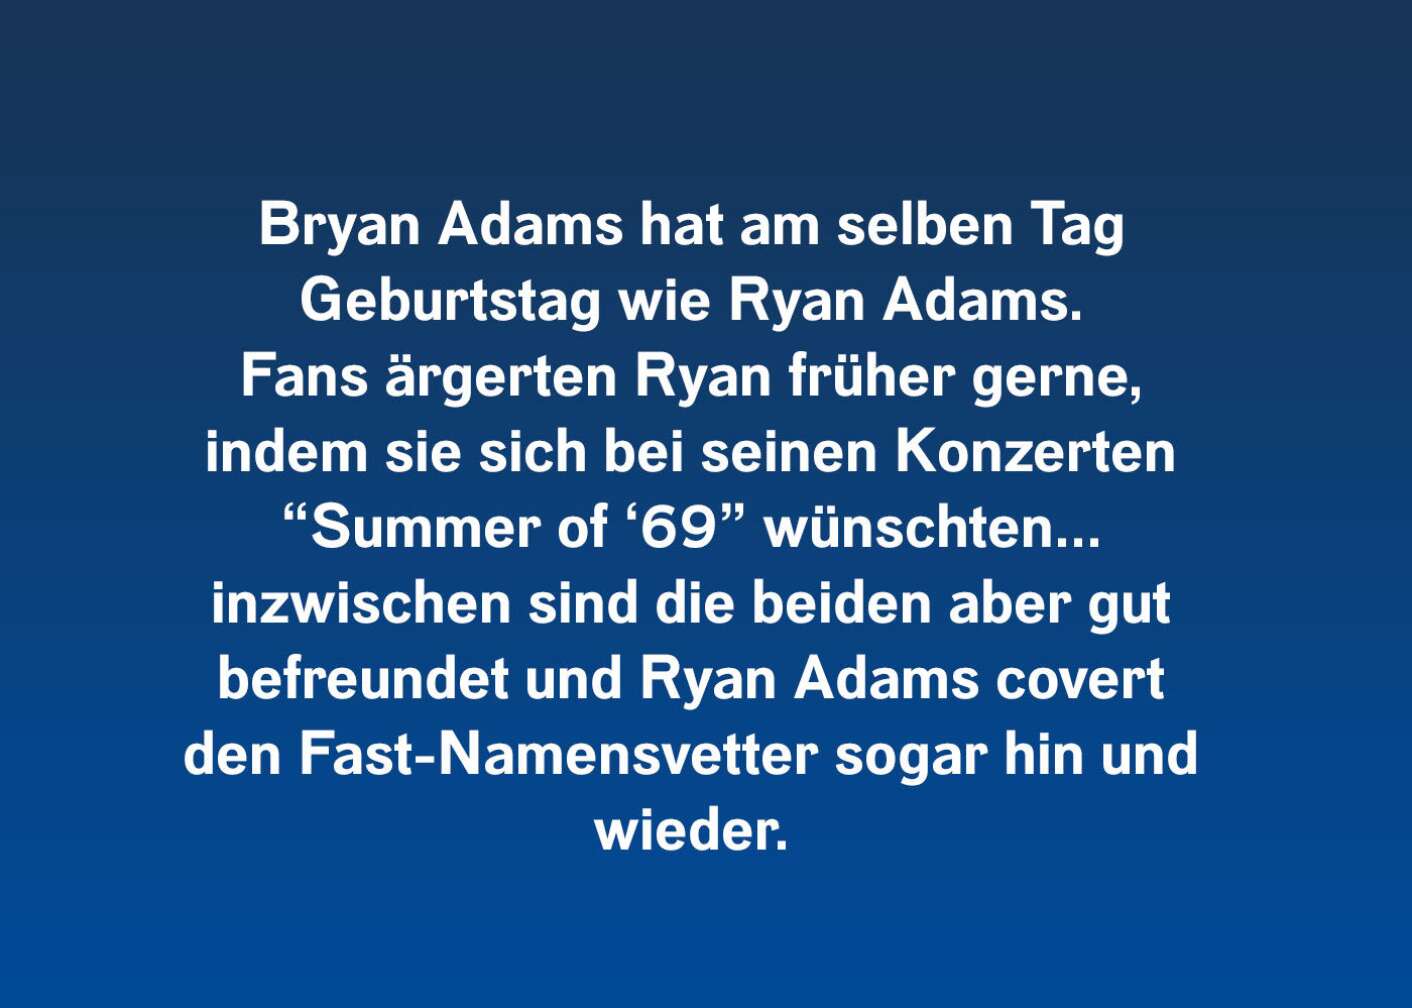 10 Fakten über Bryan Adams